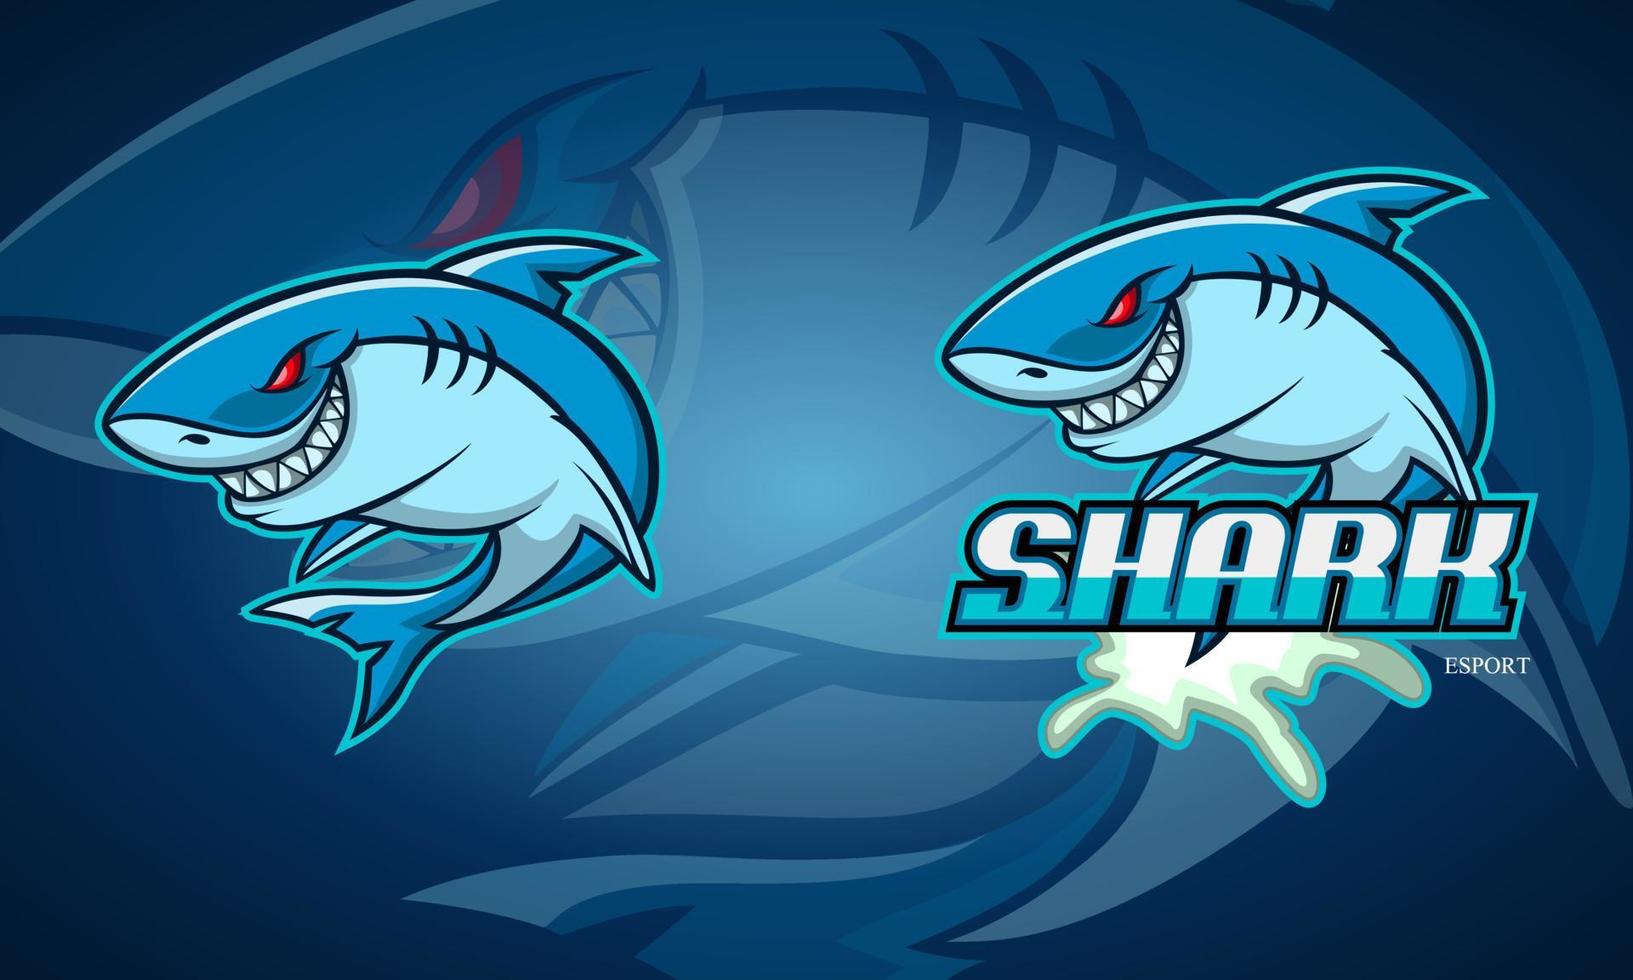 création de logo esport mascotte requin vecteur